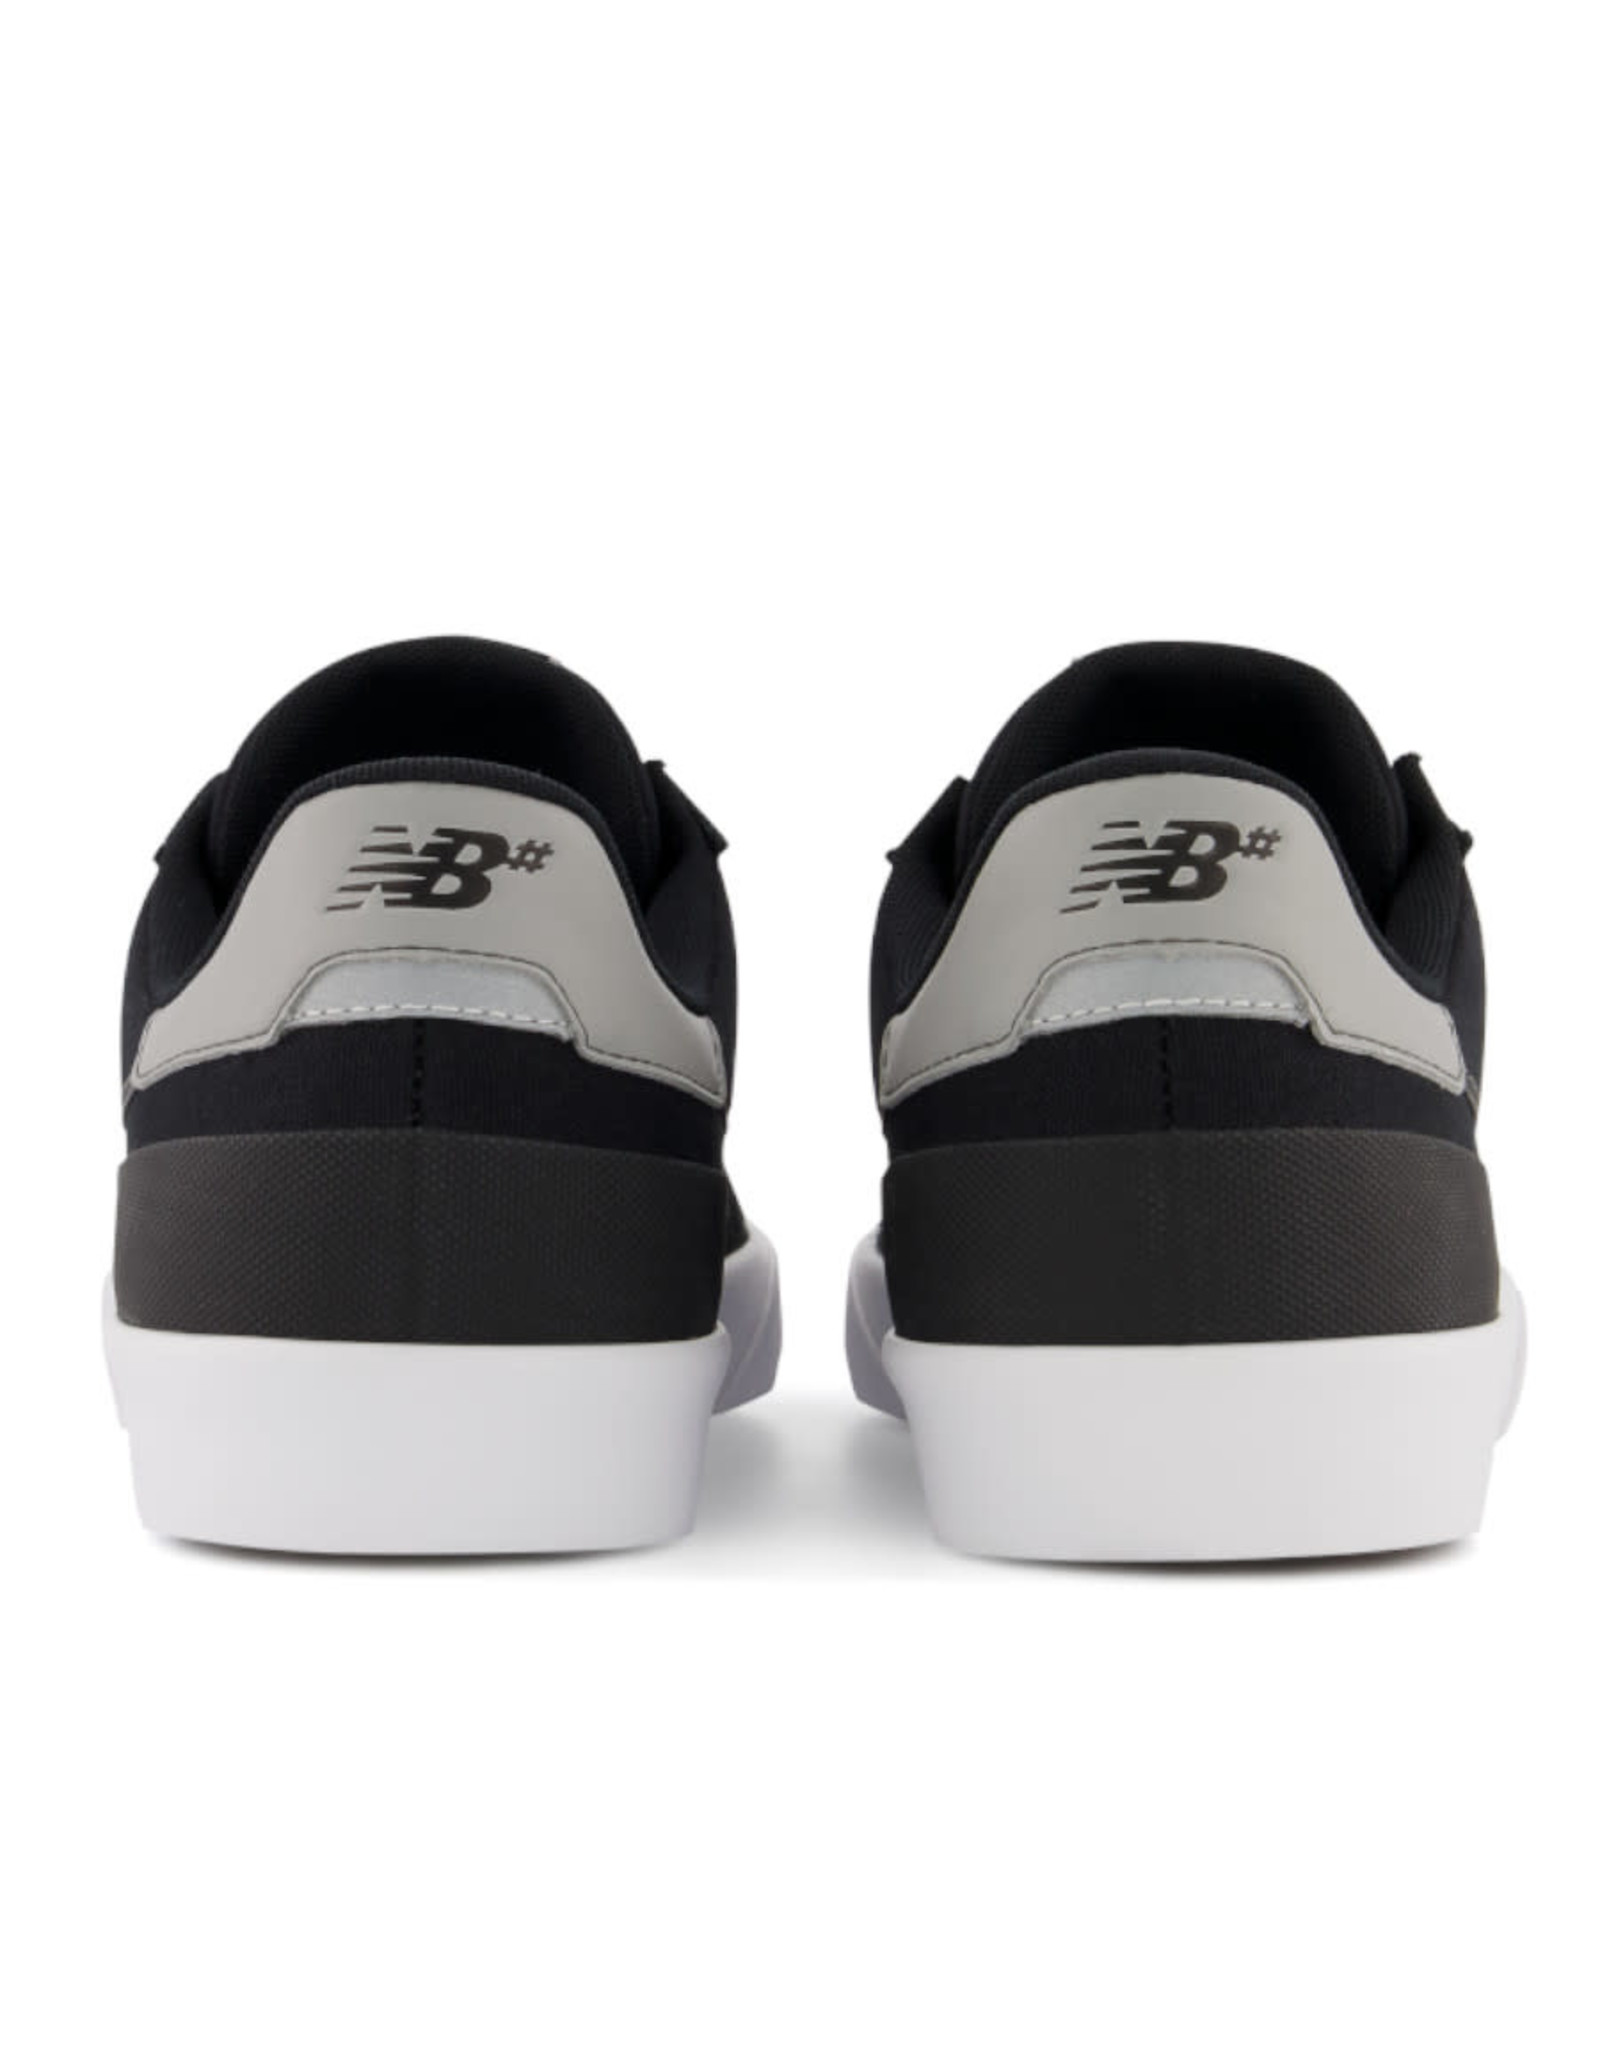 New Balance Numeric New Balance Numeric Shoe 272 (Black/Grey)